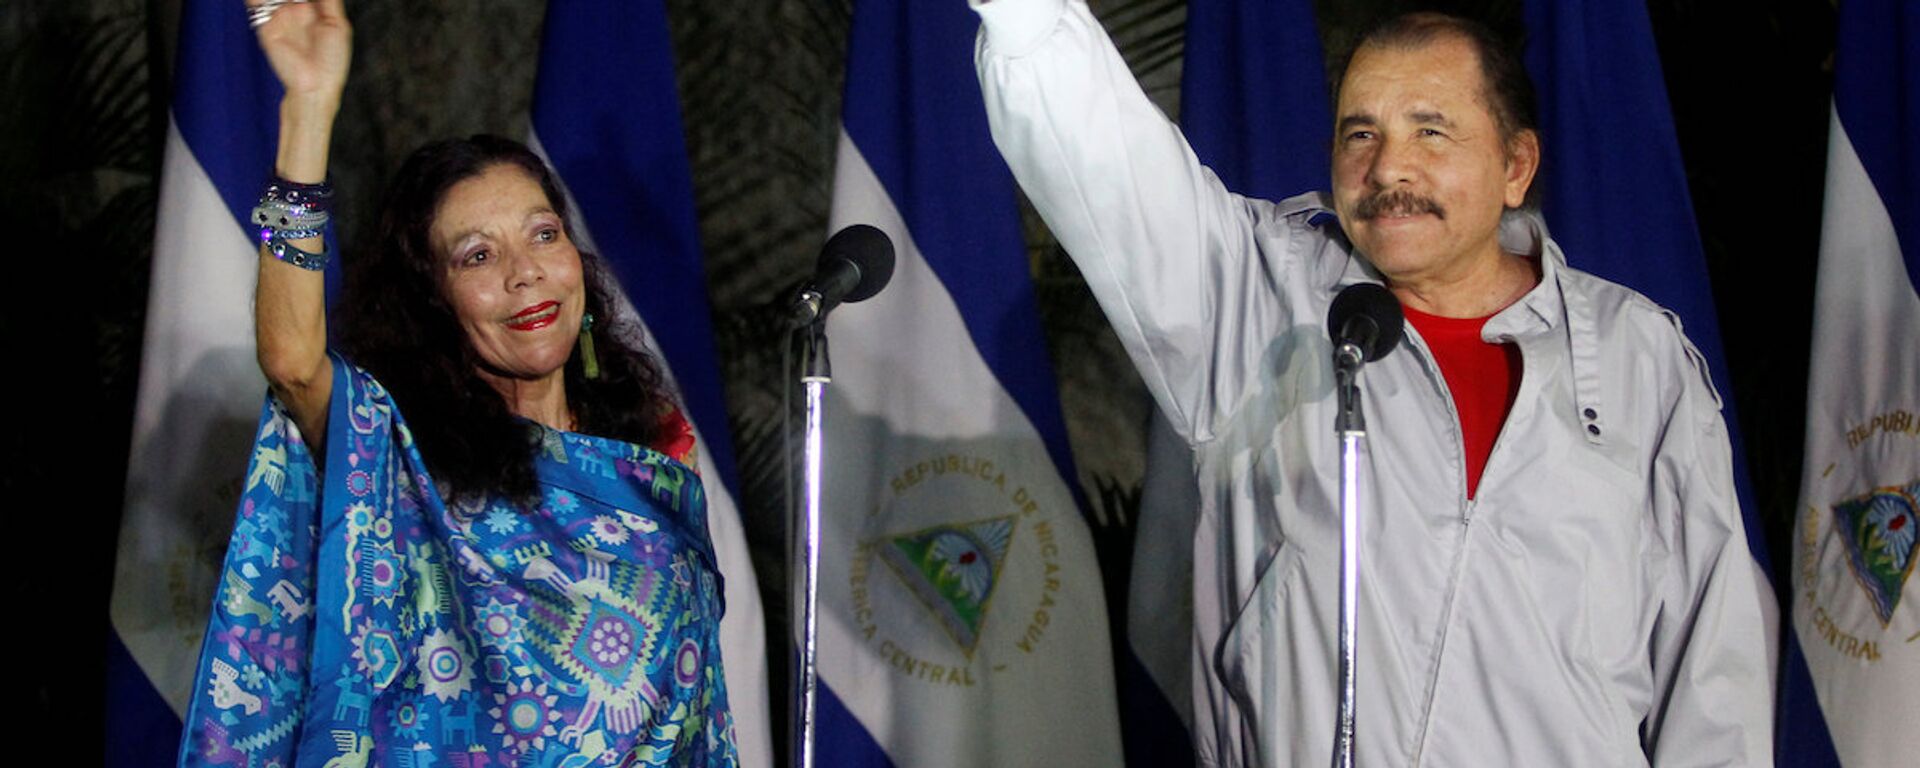 Nikaragua Devlet Başkanı Daniel Ortega ve eşi Rosario Murillo - Sputnik Türkiye, 1920, 05.10.2021